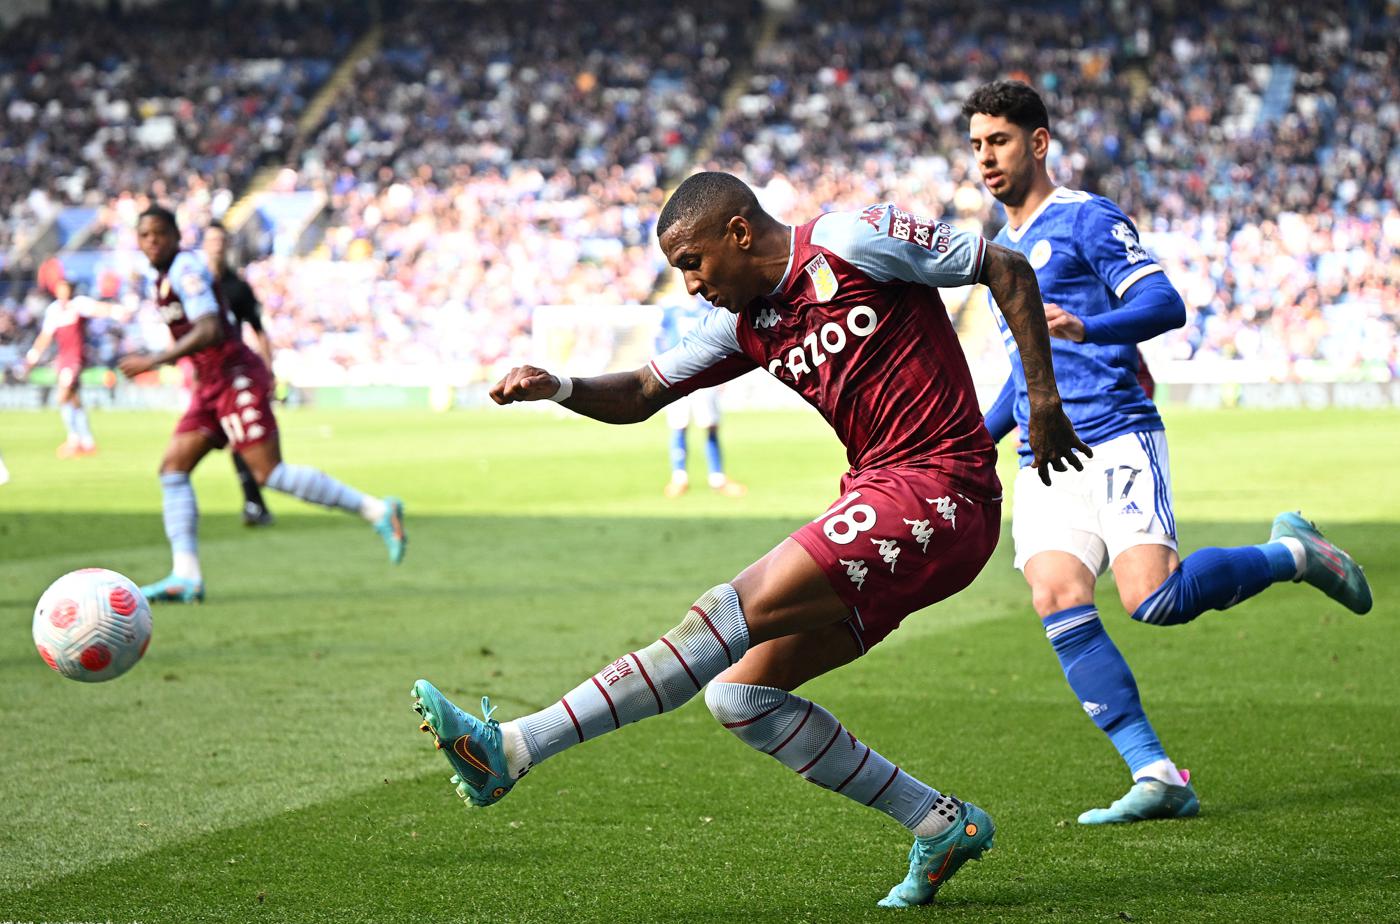 Leicester gegen Aston Villa - 1:2. Englische Meisterschaft, Runde 7. Rückblick auf das Spiel, Statistiken.